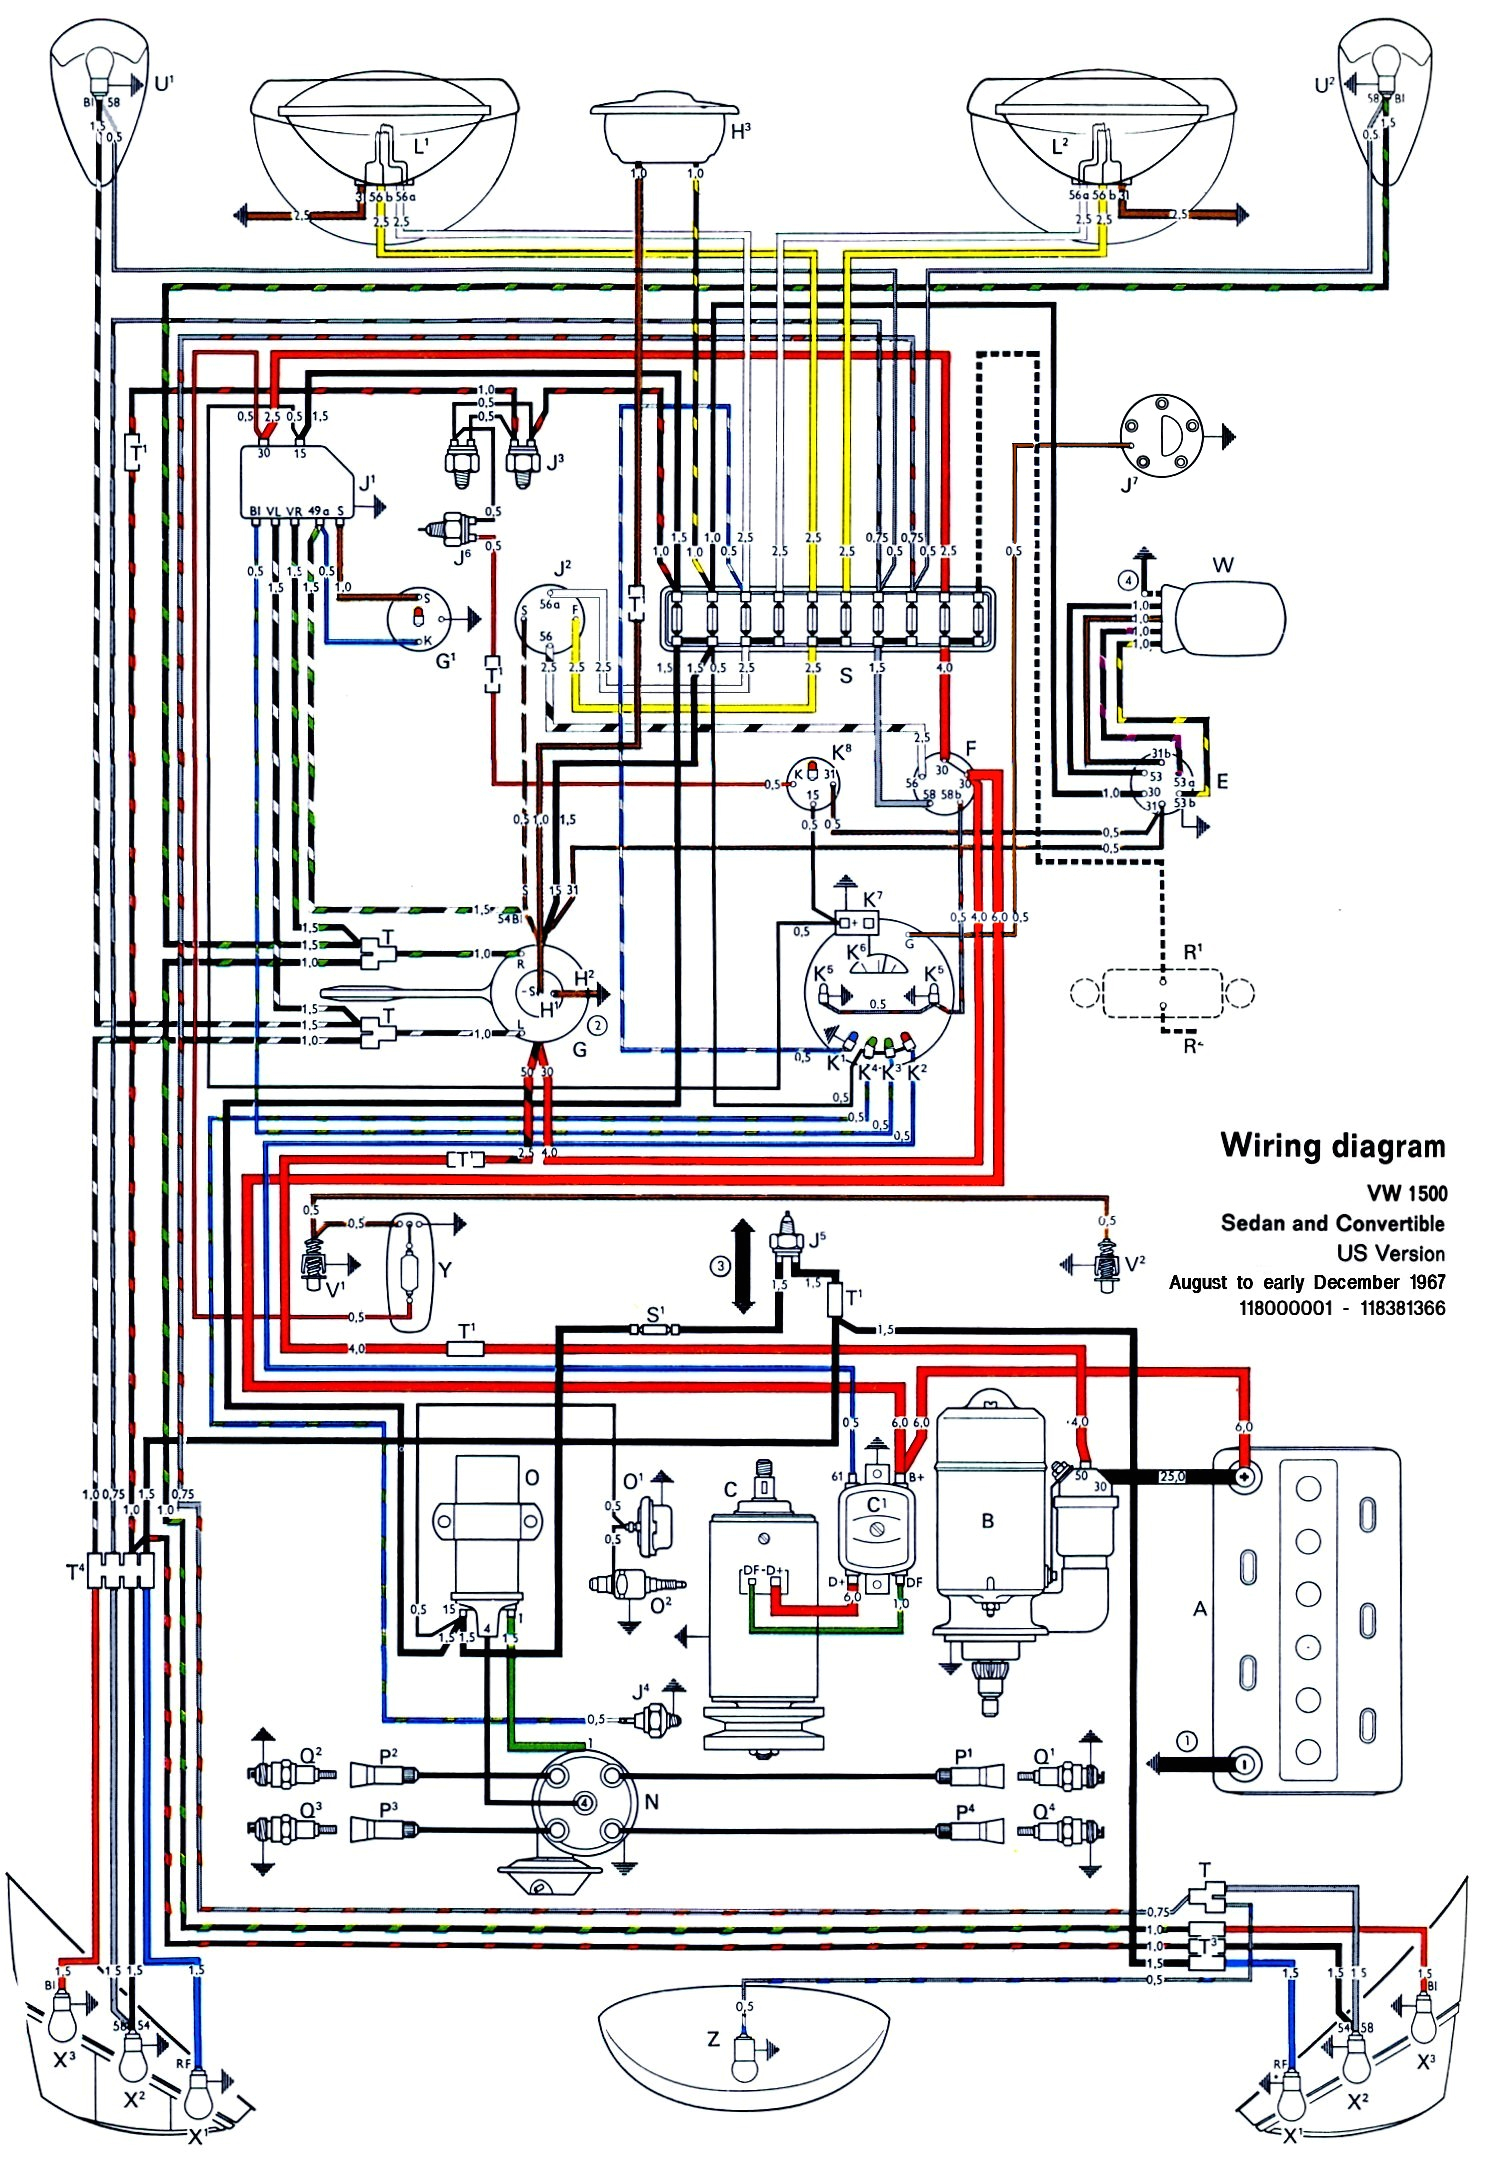 1973 vw beetle wiring diagram wiring diagram article 1973 beetle wiring harness wiring diagram user 1973